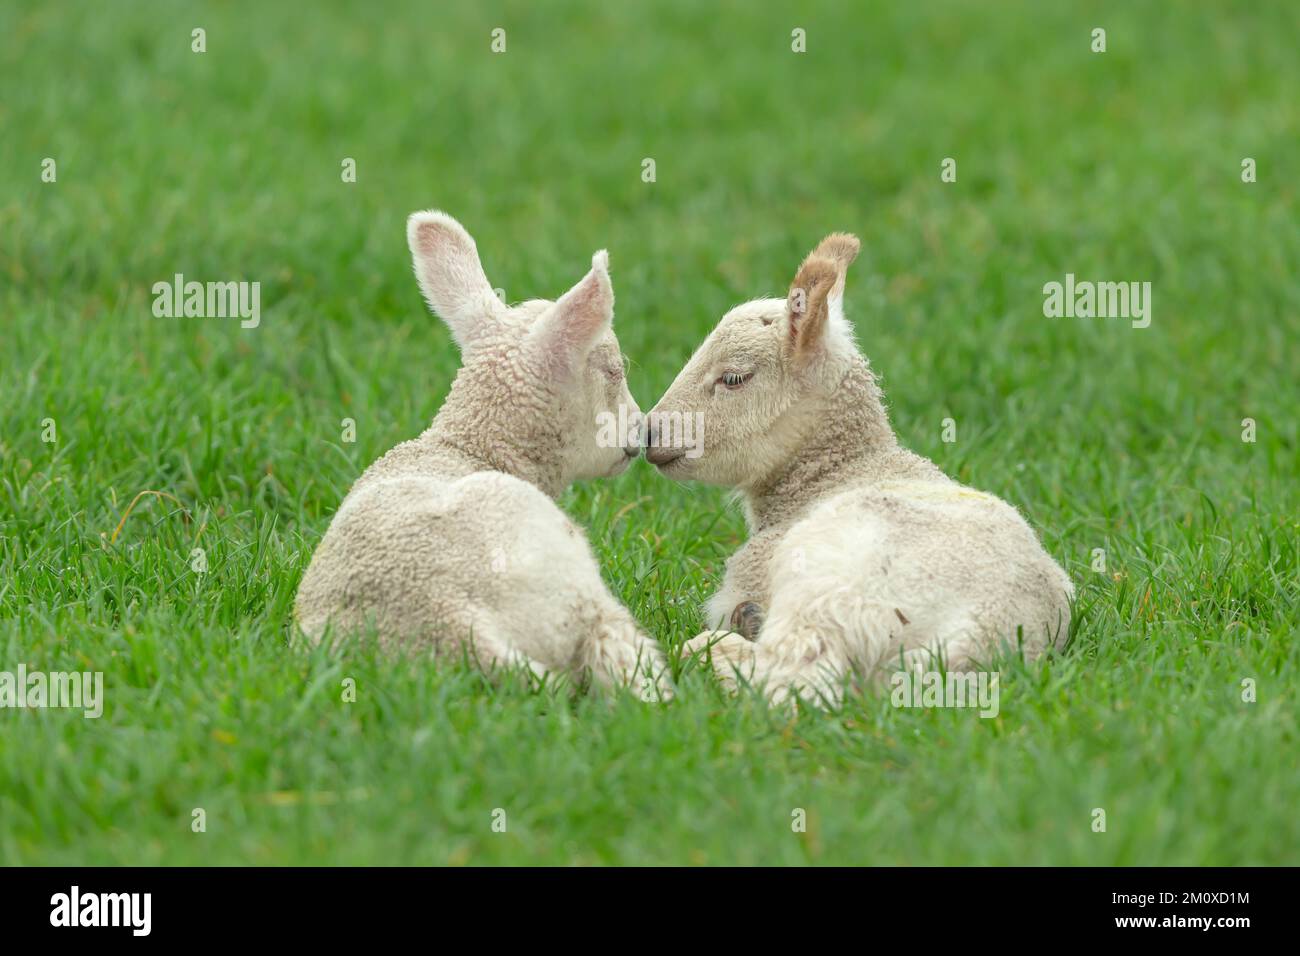 Gros plan de deux adorables agneaux jumeaux au printemps, dans un cadre verdoyant avec un agneau nuzzling de l'agneau endormi. Copier l'espace. Horizontale. Banque D'Images